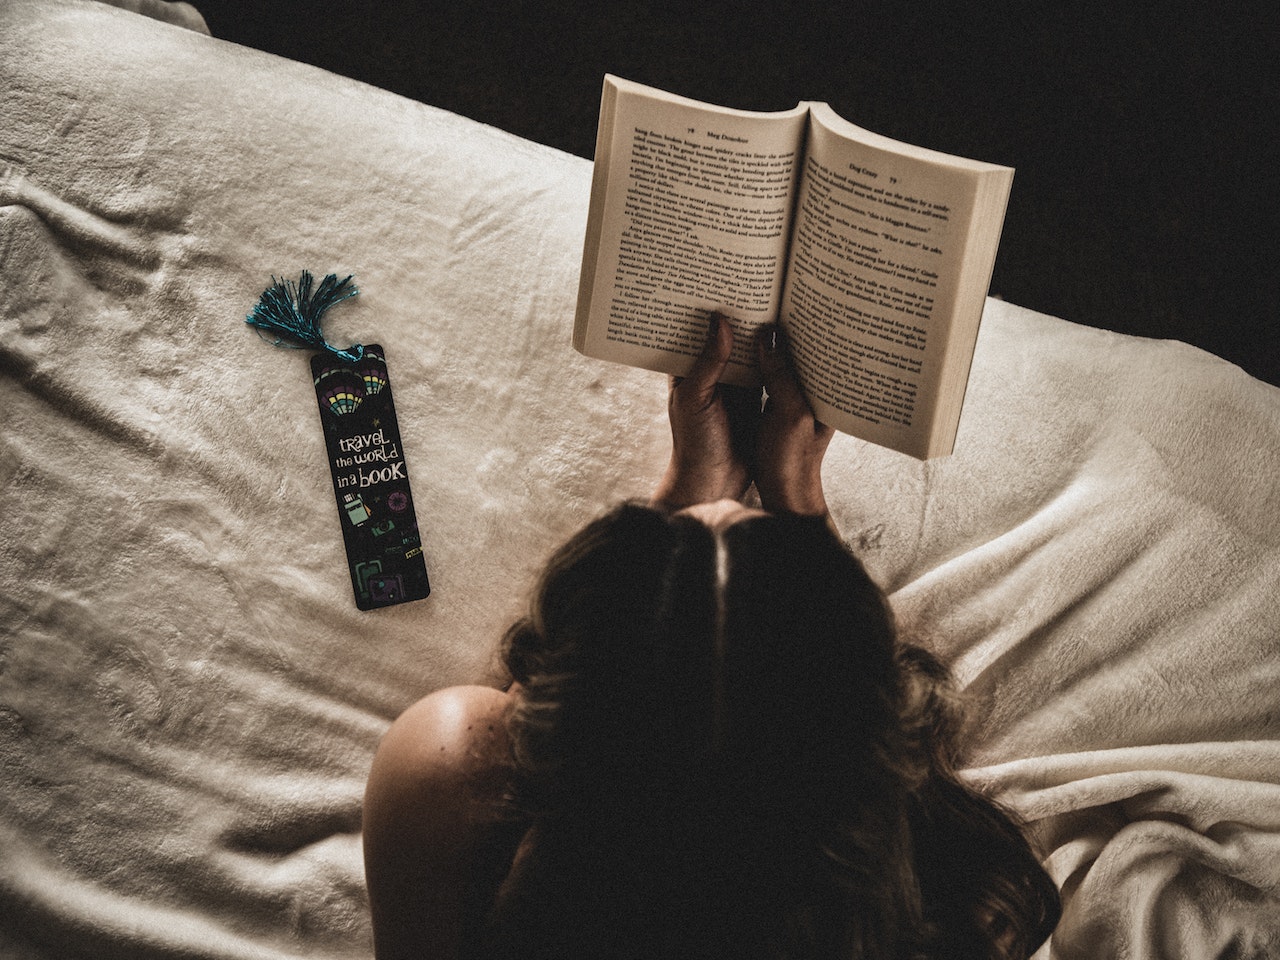 Na zdjęciu widzimy kobietę, która siedzi na łóżku i z pochylonym nad książką czołem skupia się na lekturze. Książka, którą trzyma w dłoniach, jest z gatunku literatury obyczajowej. Widać, że kobieta jest w pełni pochłonięta historią i emocjami, jakie niesie ze sobą lektura. Widoczne na zdjęciu detale, takie jak wygodne poduszki i koce, sugerują, że czytanie jest dla niej sposobem na relaks i odpoczynek po ciężkim dniu. Takie podejście do literatury obyczajowej, która często porusza trudne tematy z życia codziennego, pokazuje, że ta forma sztuki może być zarówno inspirująca, jak i relaksująca. To zdjęcie jest doskonałym wizualnym odzwierciedleniem siły i pozytywnego wpływu, jaki może mieć literatura obyczajowa na nasze życie. Zachęca do sięgnięcia po książkę z tego gatunku i doświadczenia na własnej skórze, jakie wartości i emocje potrafi przynieść literatura obyczajowa